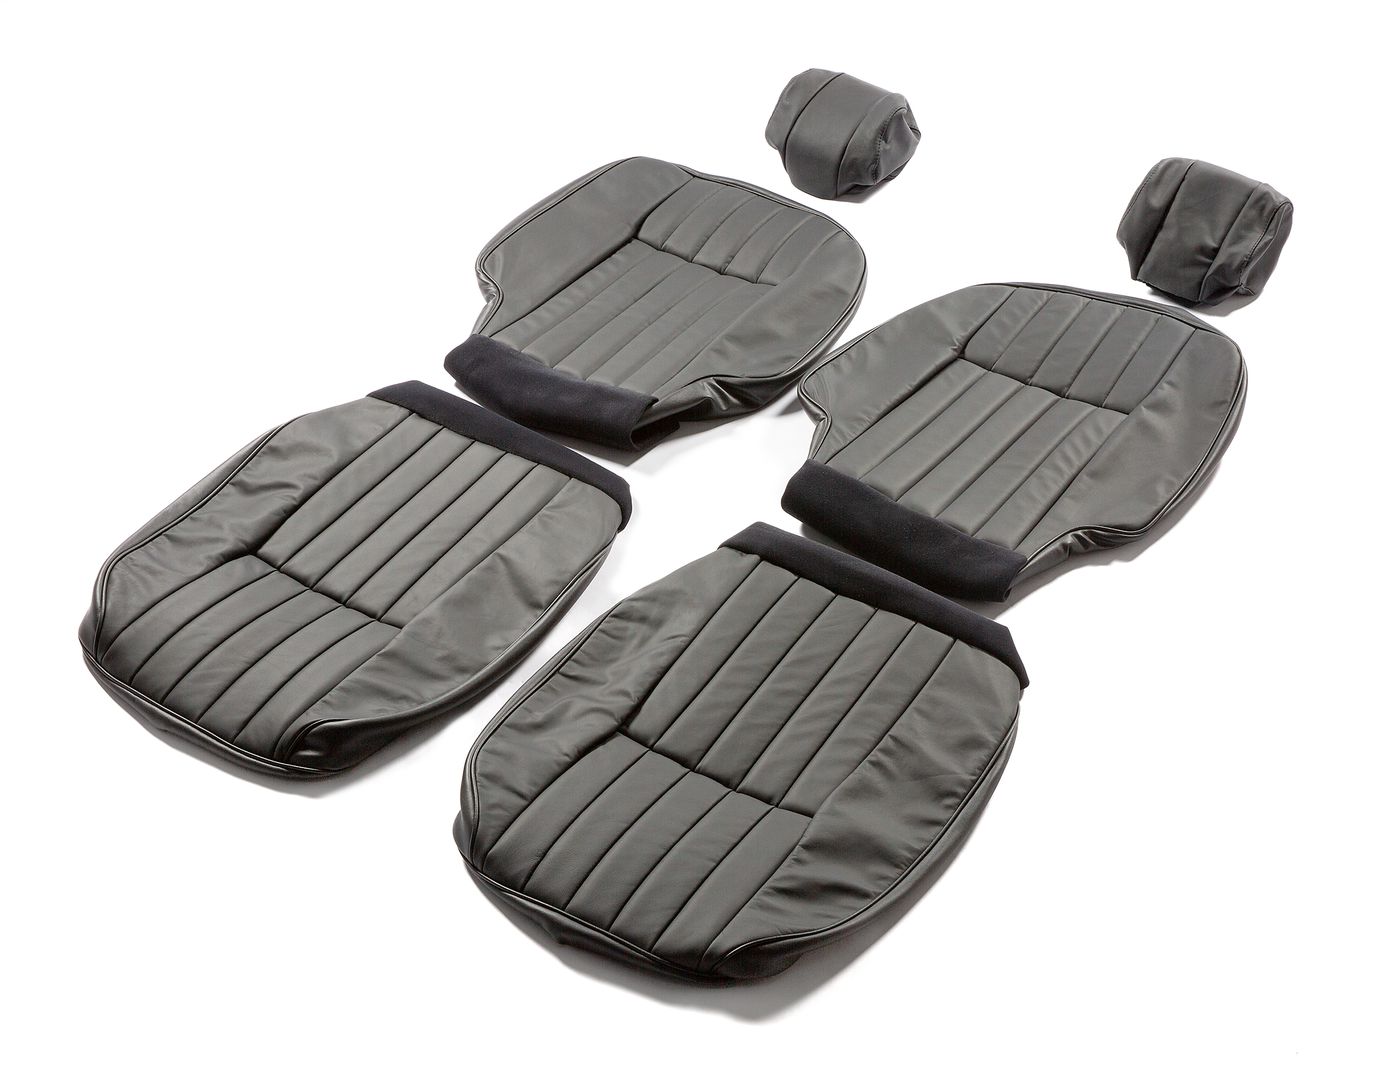 Ledersitzbezüge
Leather seat covers
Housses de siège en cuir
L